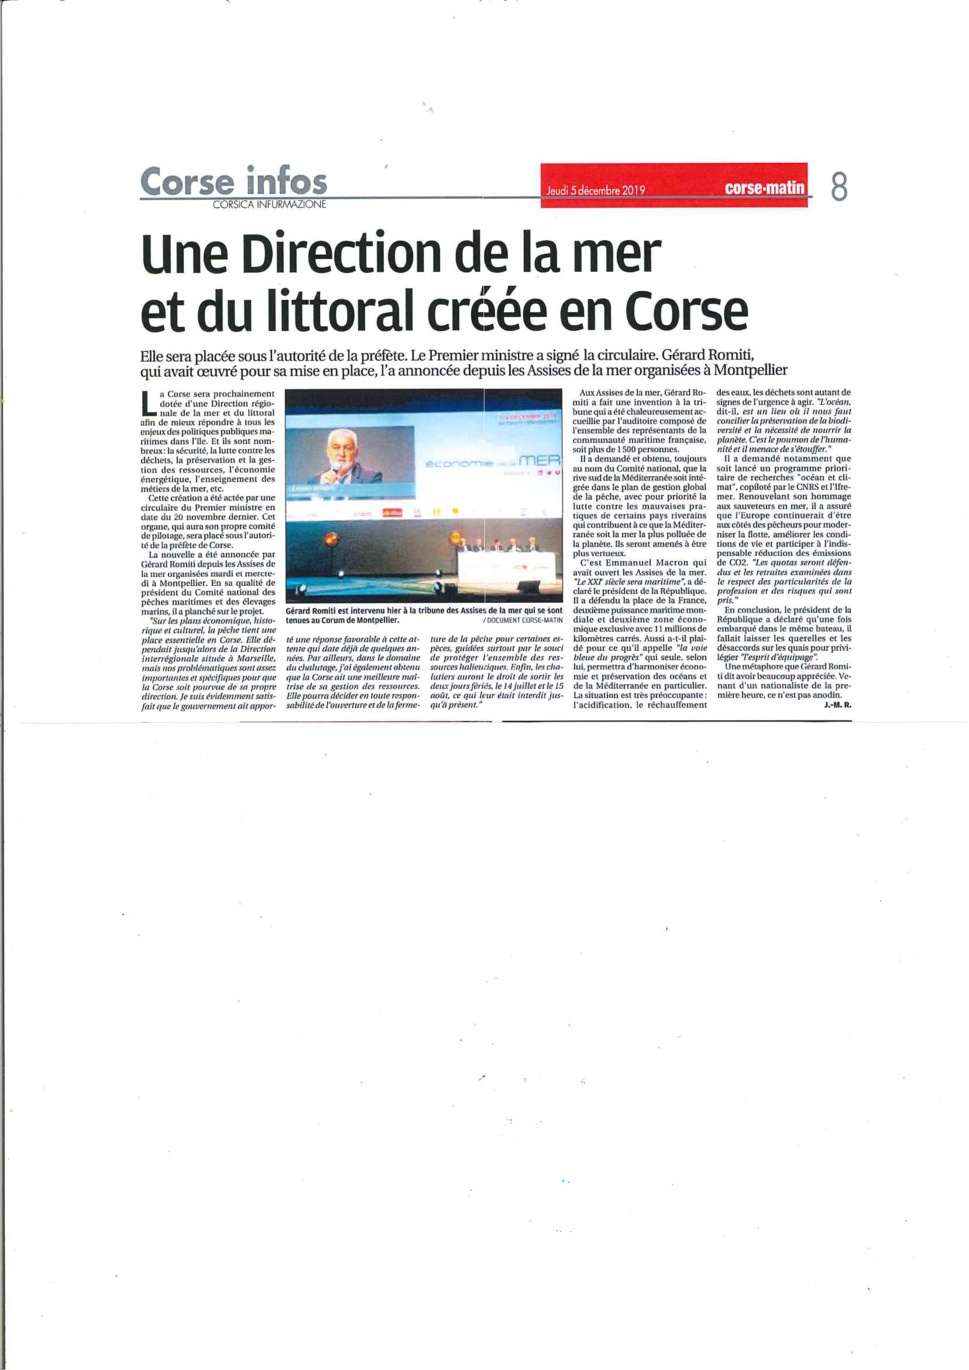 La nouvelle a été annoncée par Gérard Romiti, Président du CRPMEM de Corse et du CNPMEM.